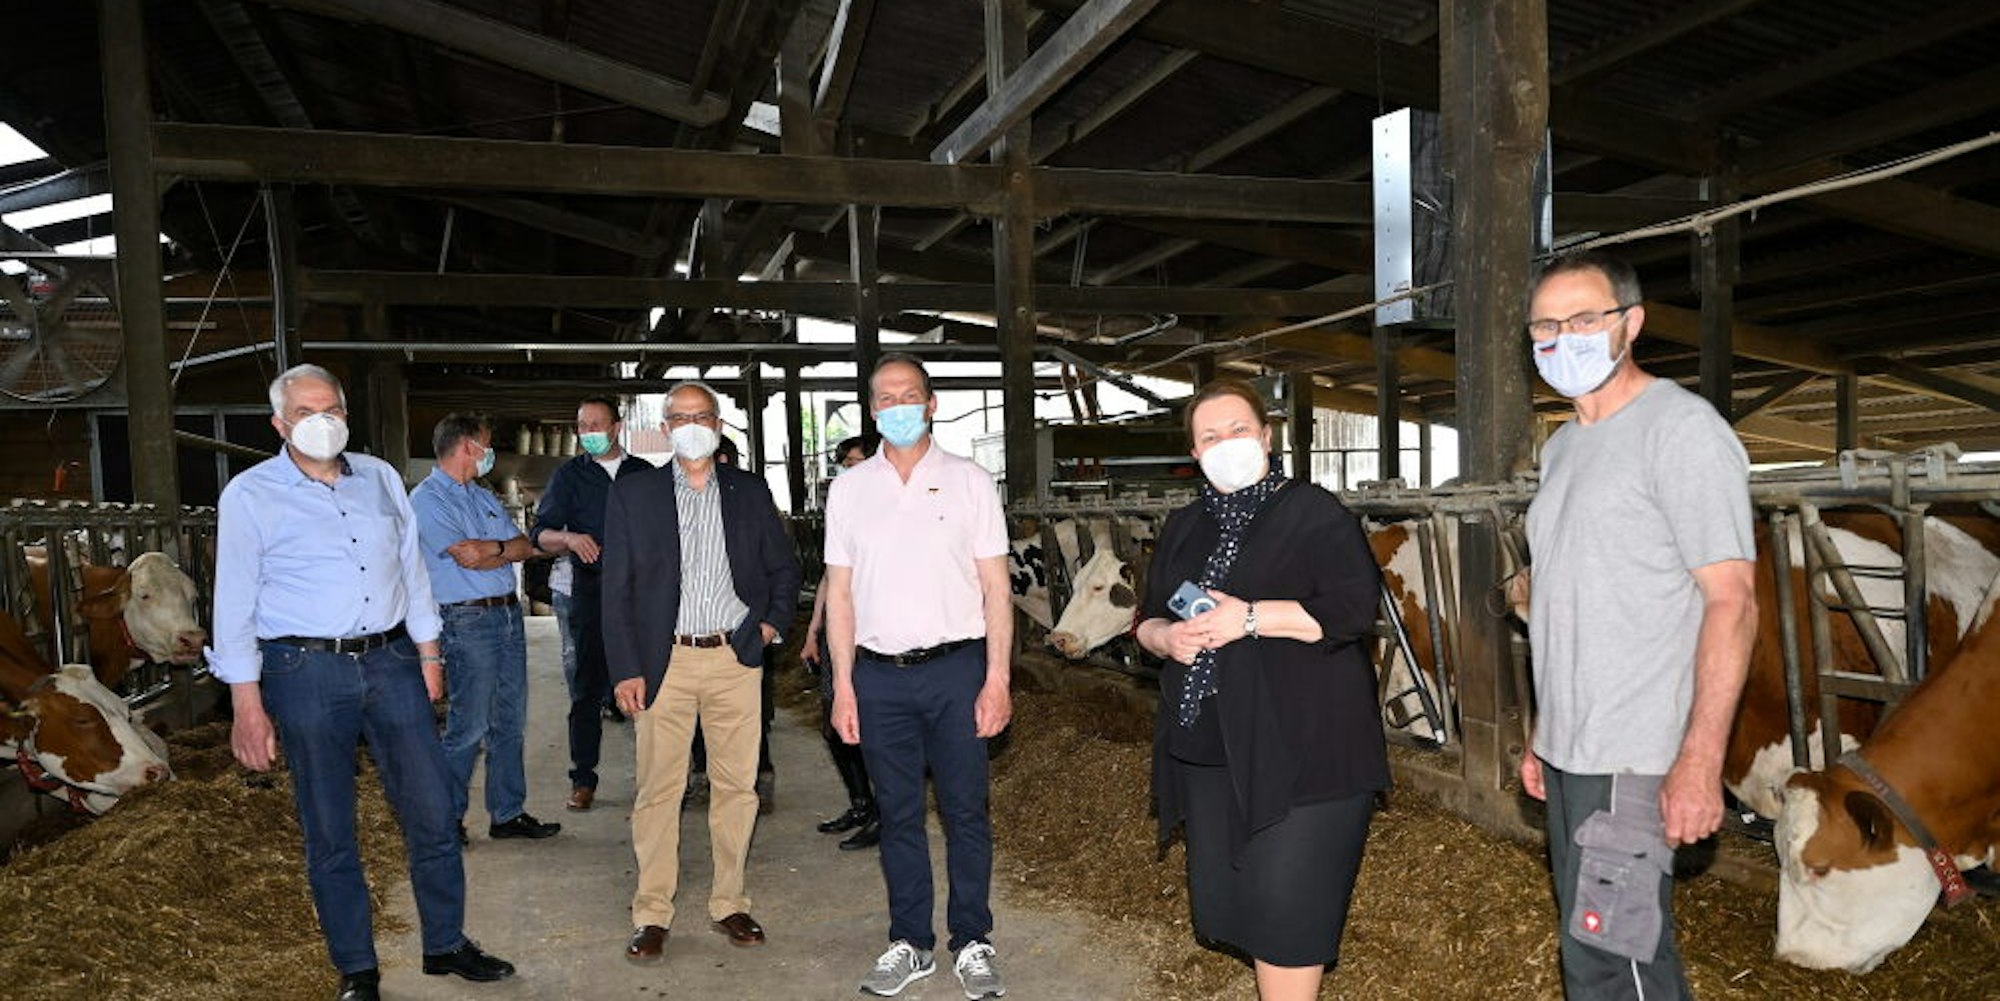 Im Kuhstall von Lambert Stöcker (r.) trafen sich Rainer Deppe, Uli Heimann, Michael Braun und Landwirtschaftsministerin Ursula Heinen-Esser (v. l.).